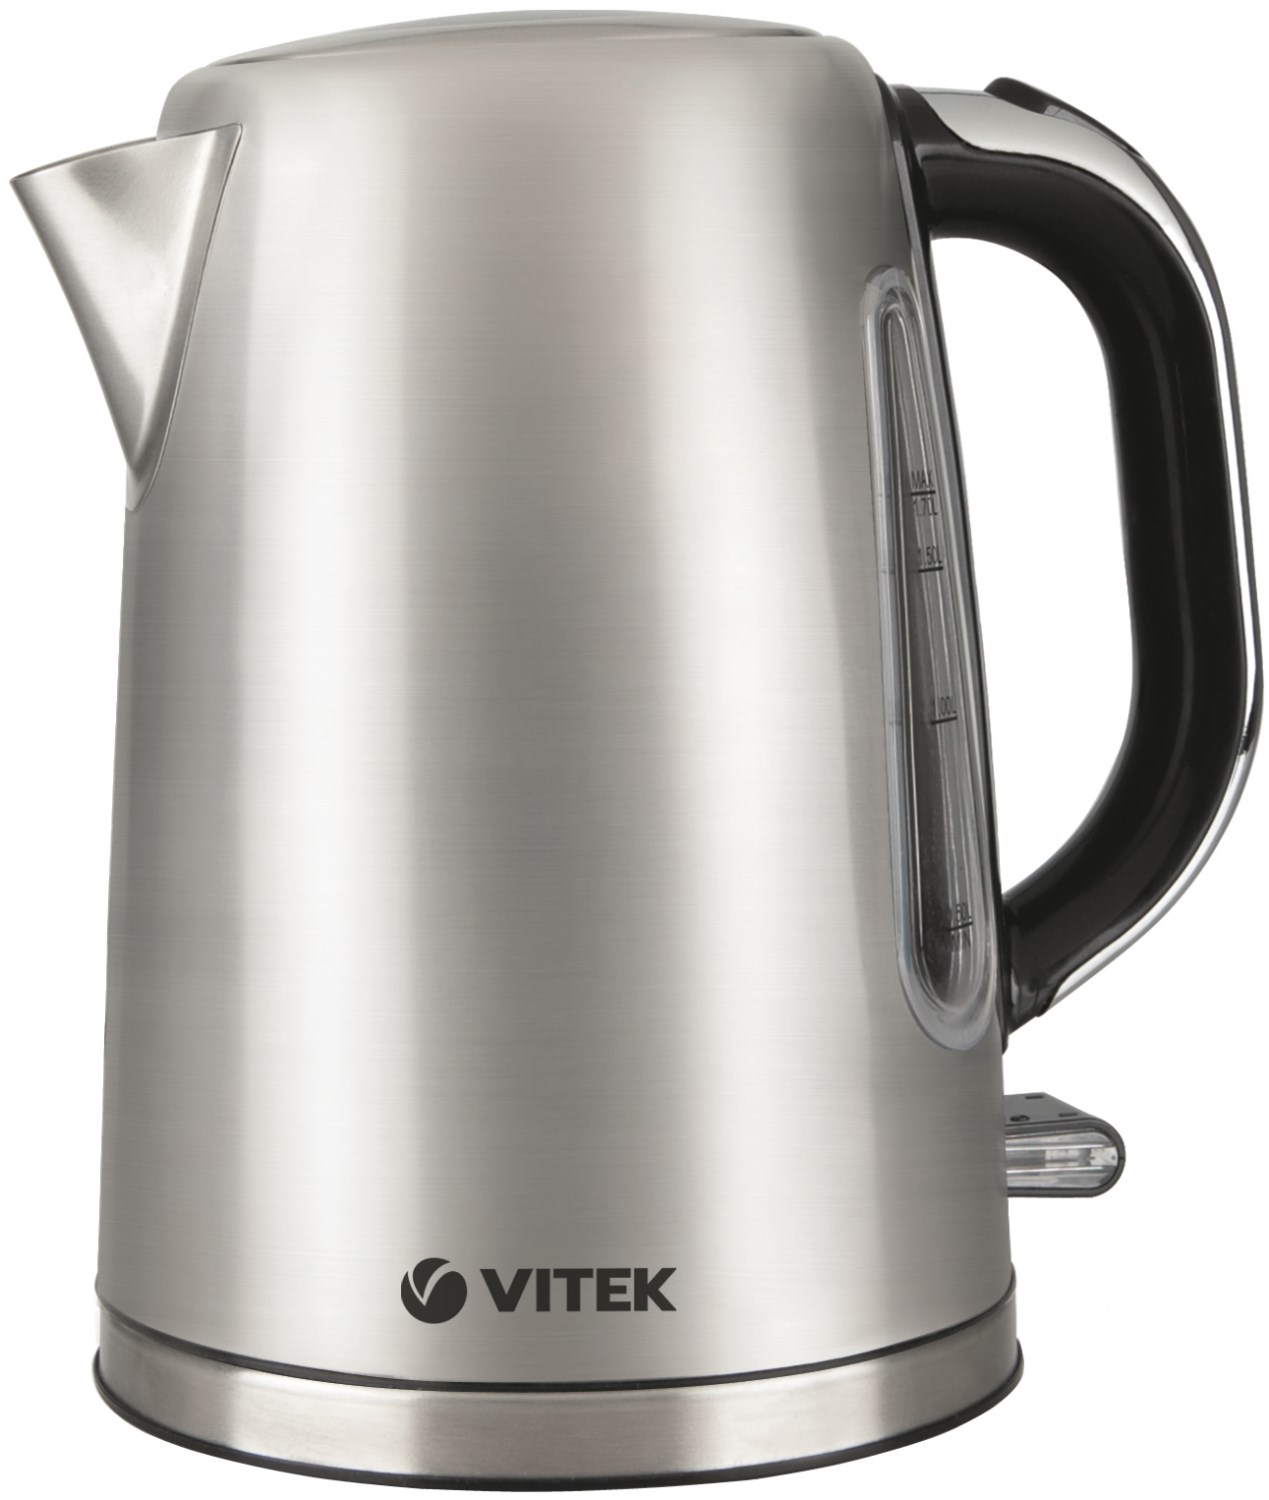 Vitek 1889. Vitek VT-7067. Термосный чайник Vitek. Vitek VT-7019.